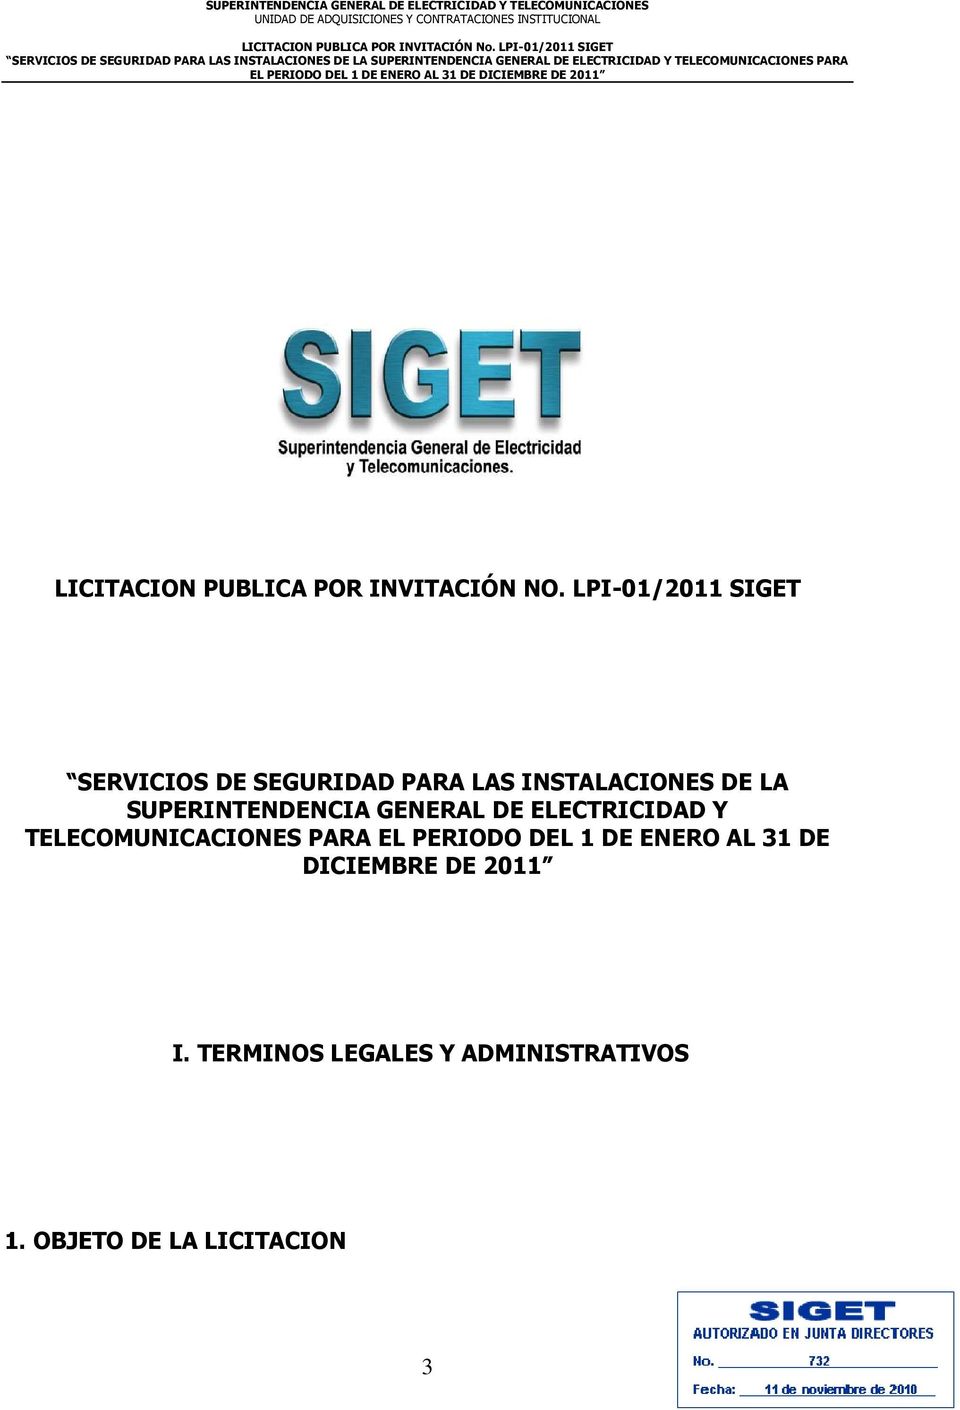 SUPERINTENDENCIA GENERAL DE ELECTRICIDAD Y TELECOMUNICACIONES PARA EL